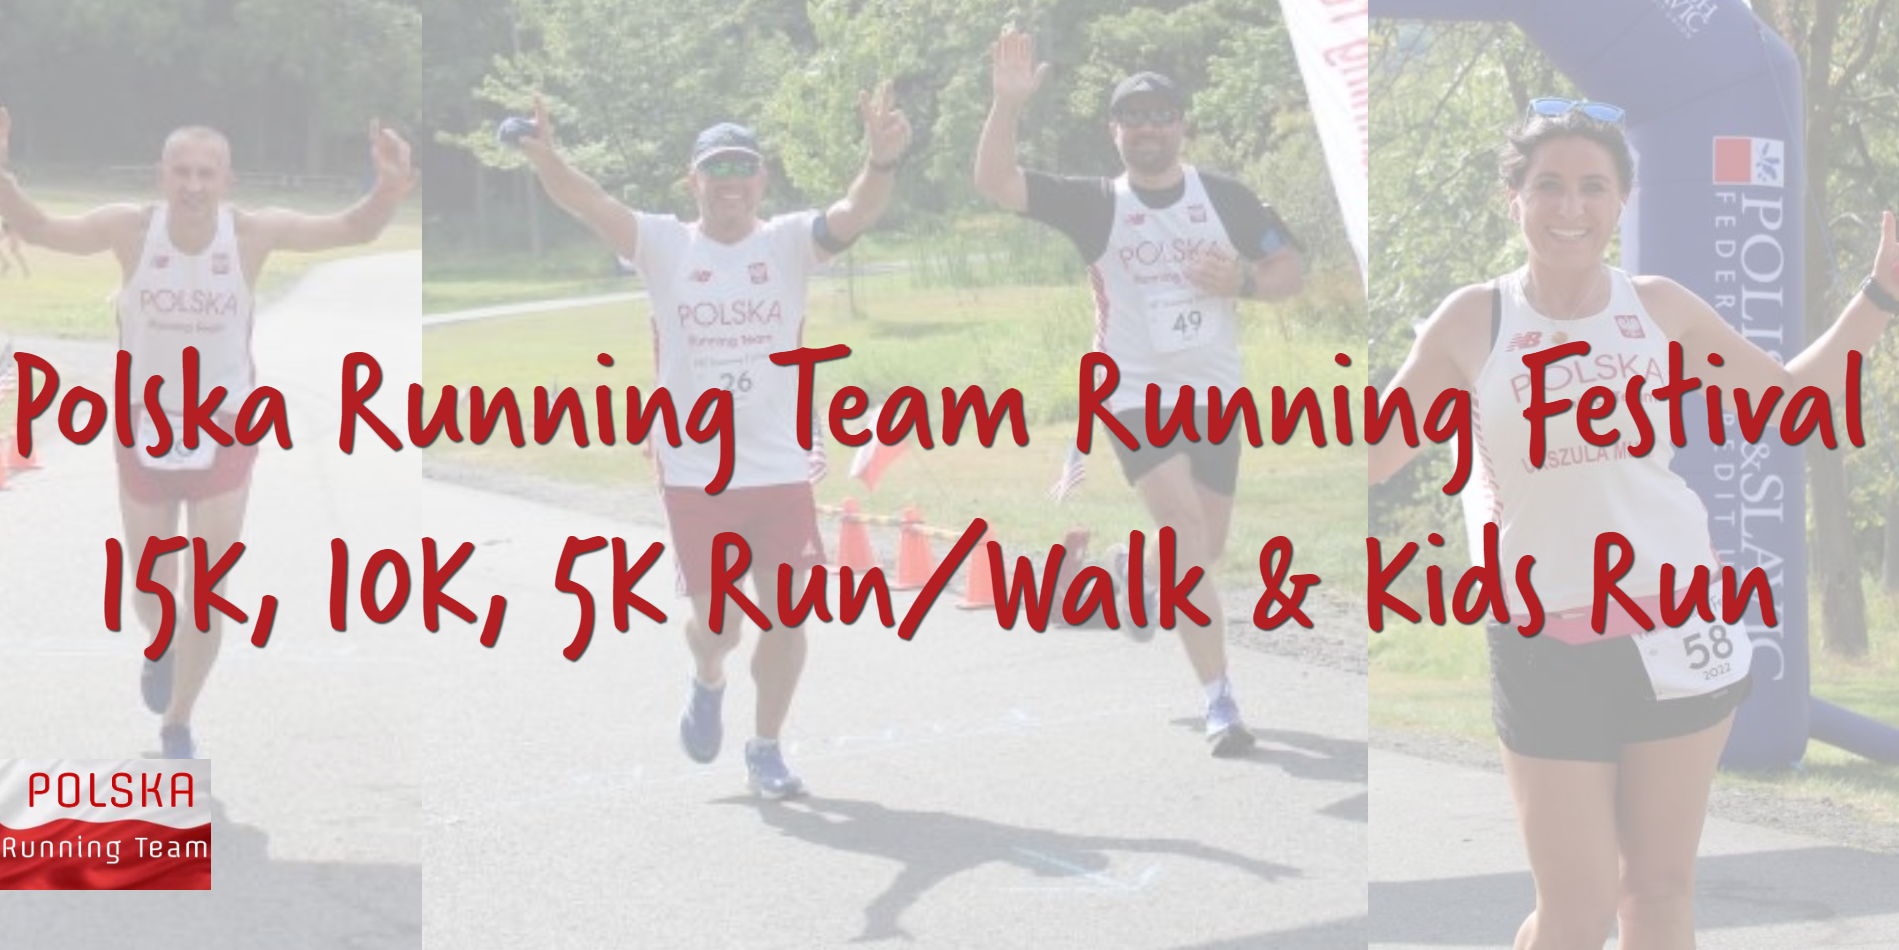 PRT Running Festival - 15K, 10K, 5K Run/Walk & Kids Run promotional image